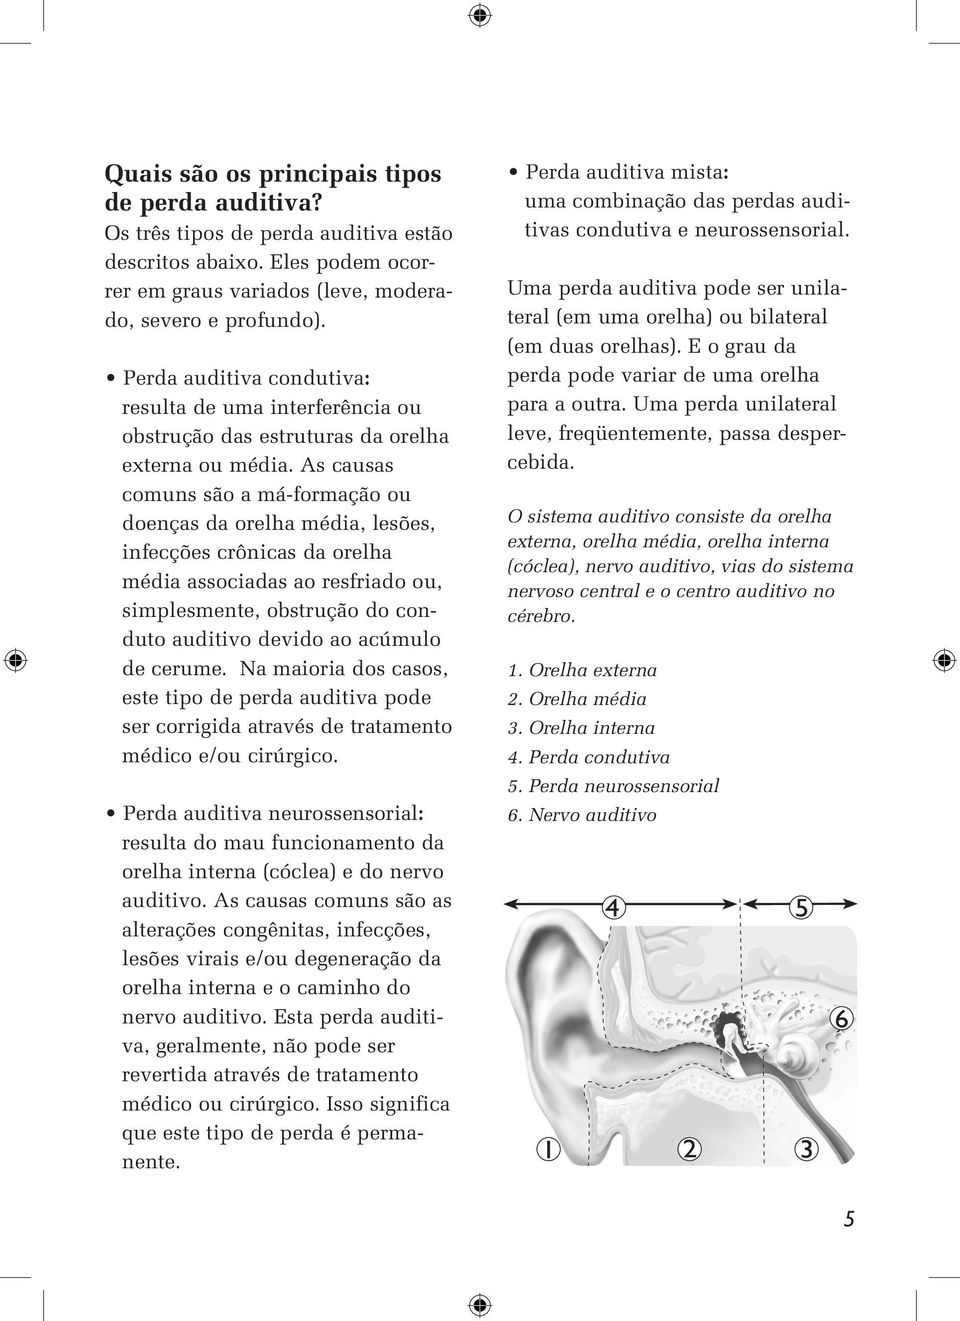 As causas comuns são a má-formação ou doenças da orelha média, lesões, infecções crônicas da orelha média associadas ao resfriado ou, simplesmente, obstrução do conduto auditivo devido ao acúmulo de